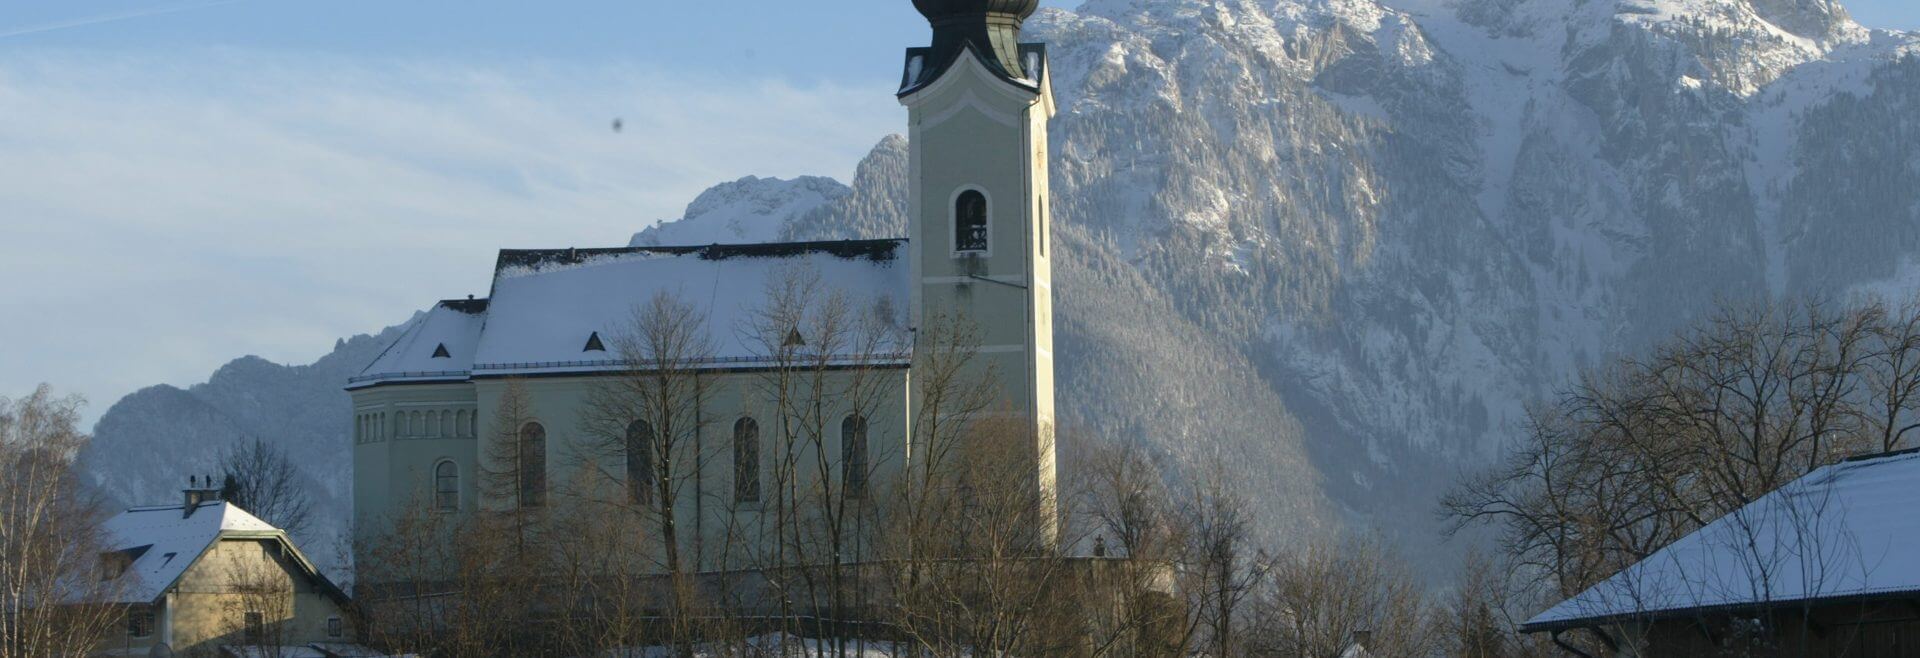 Die Schnee bedeckte Kirche von Wals-Siezenheim - im Hintergrund der Untersberg